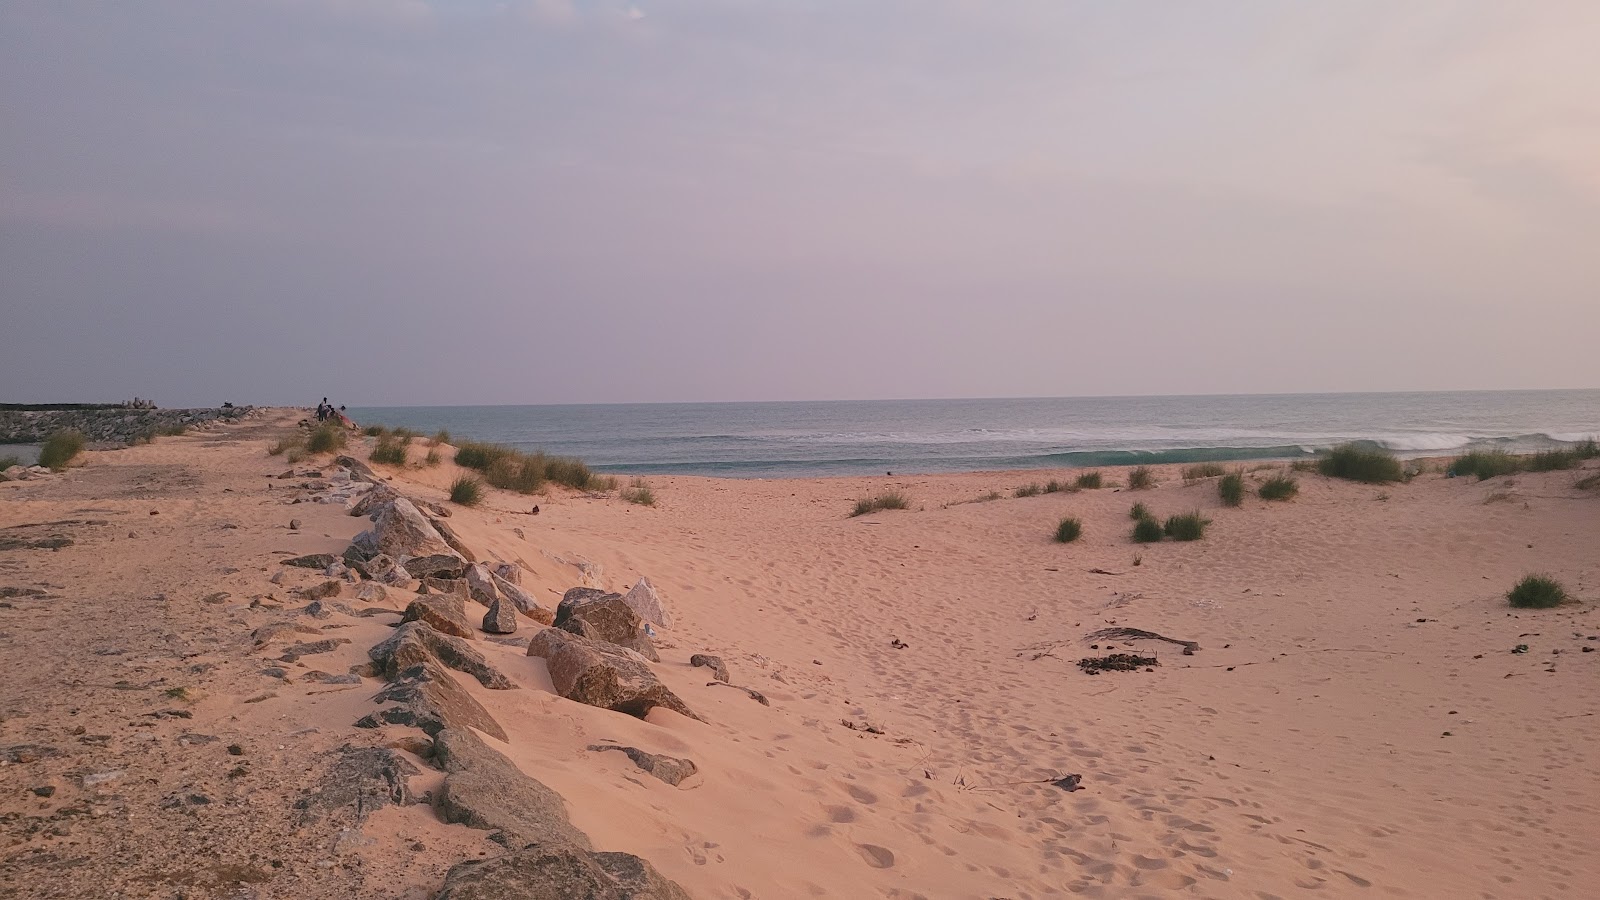 Koottappanai Beach'in fotoğrafı geniş plaj ile birlikte